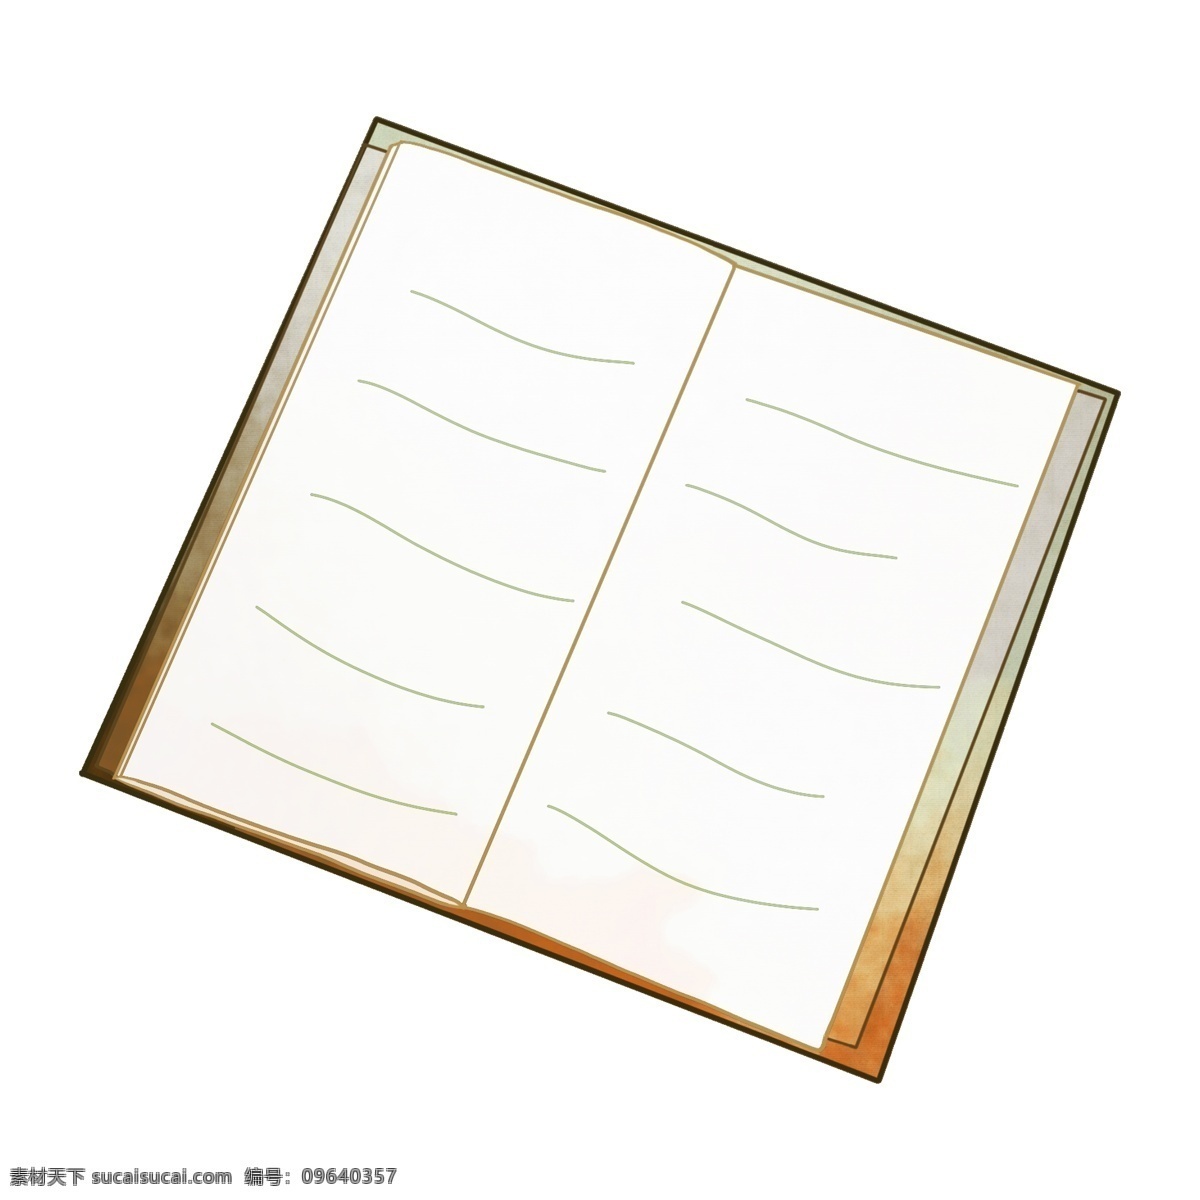 打开 日记本 插画 打开的日记本 学习用品 笔记本 卡通记事本 装饰 记录 白色纸张 记事本插画